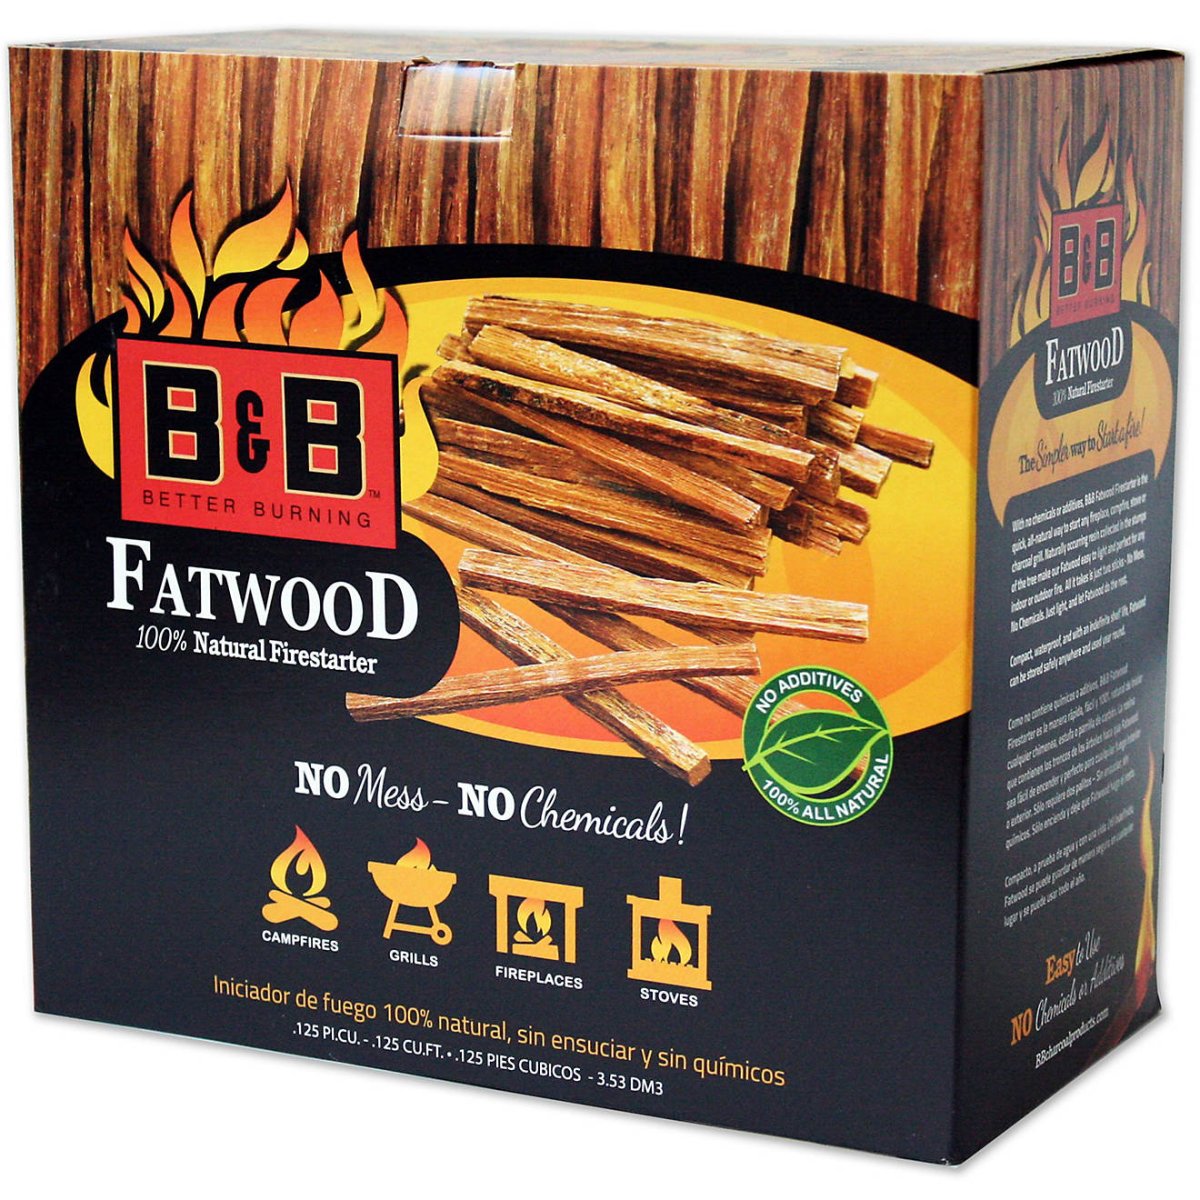 BB Fatwood Firestarter B00093 - Texas Star Grill Shop B00093